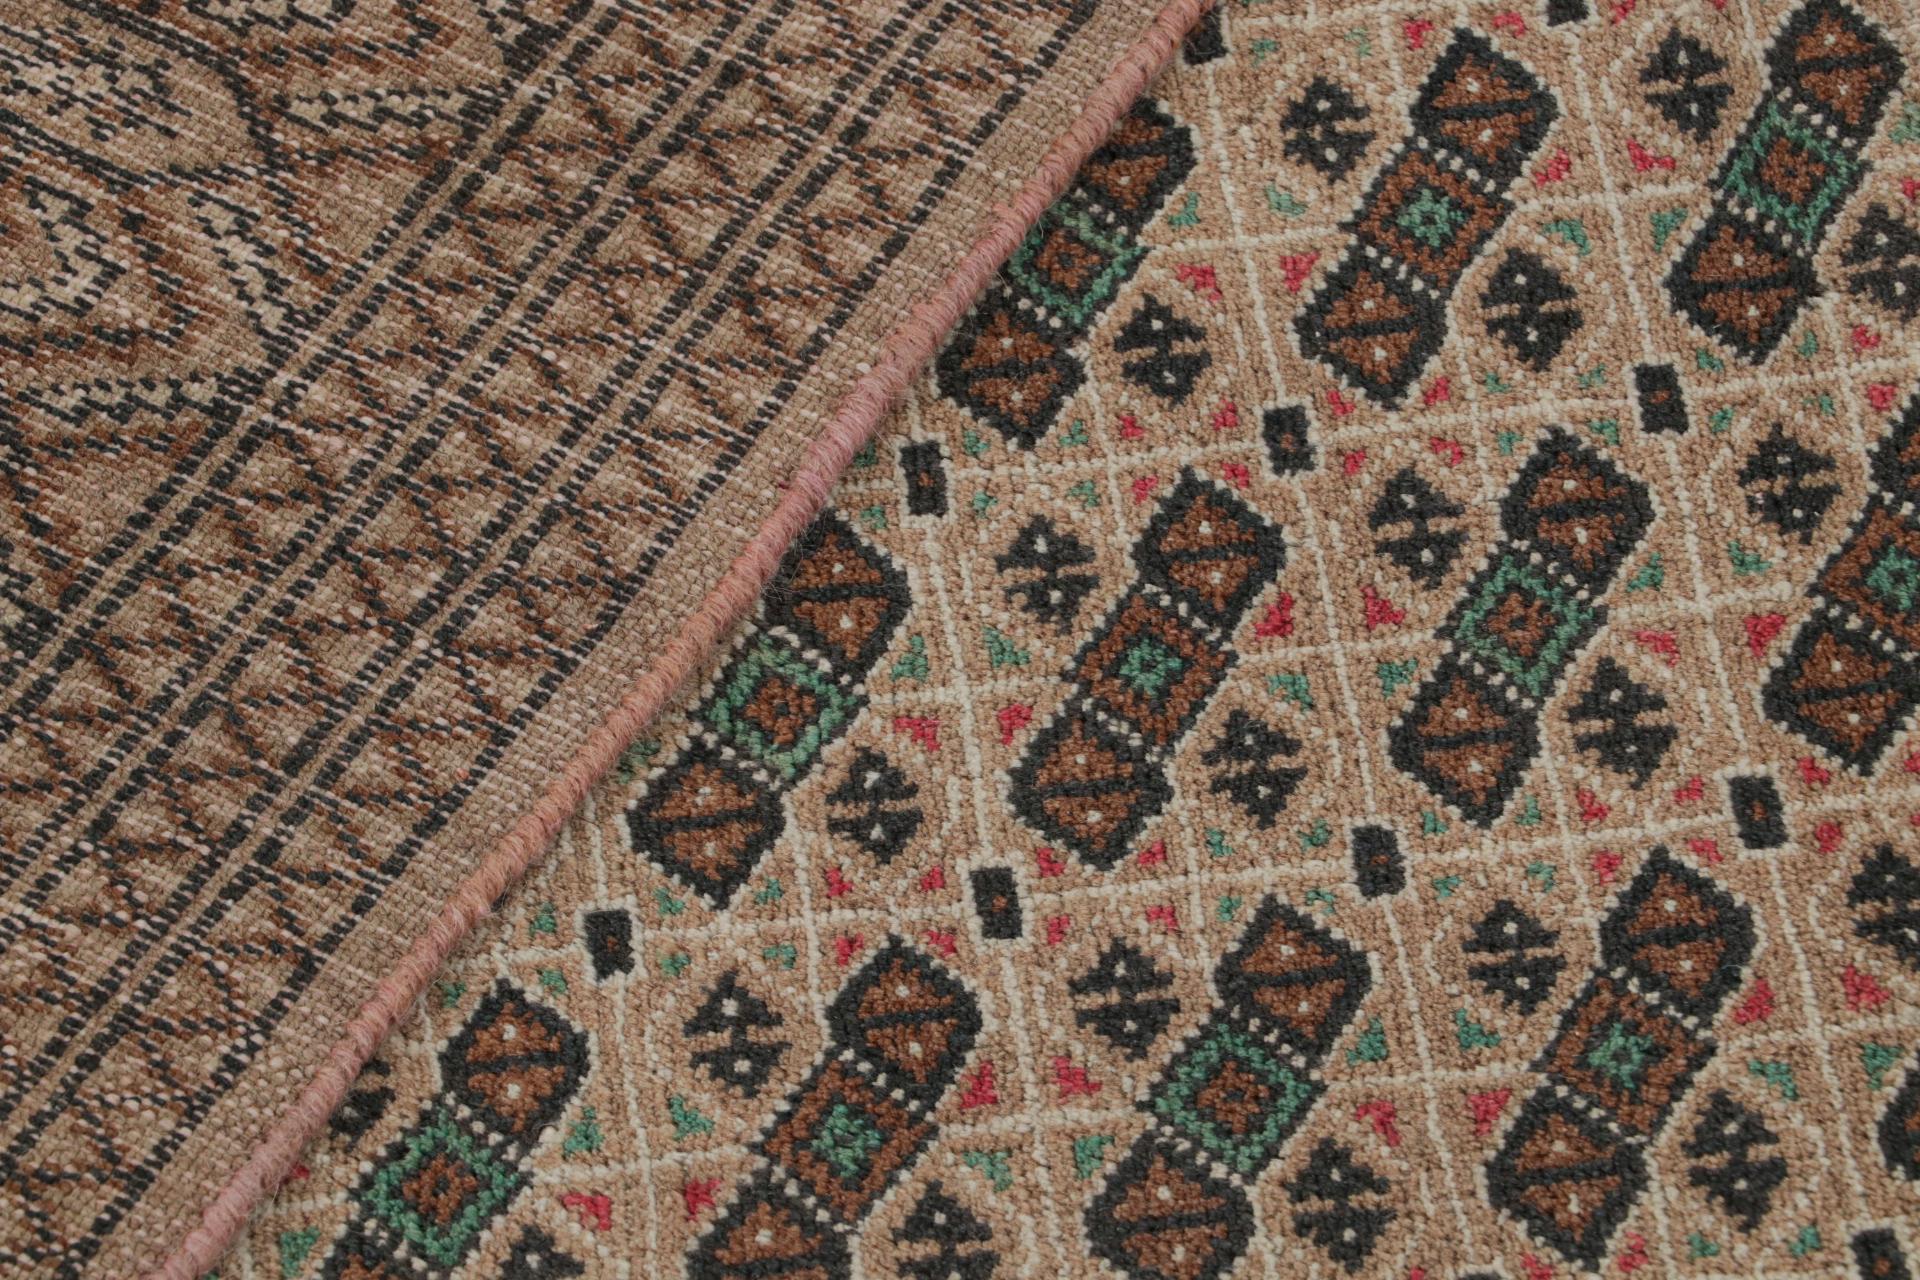 Vintage Persian rug in Beige-Brown Patterns by Rug & Kilim For Sale 1